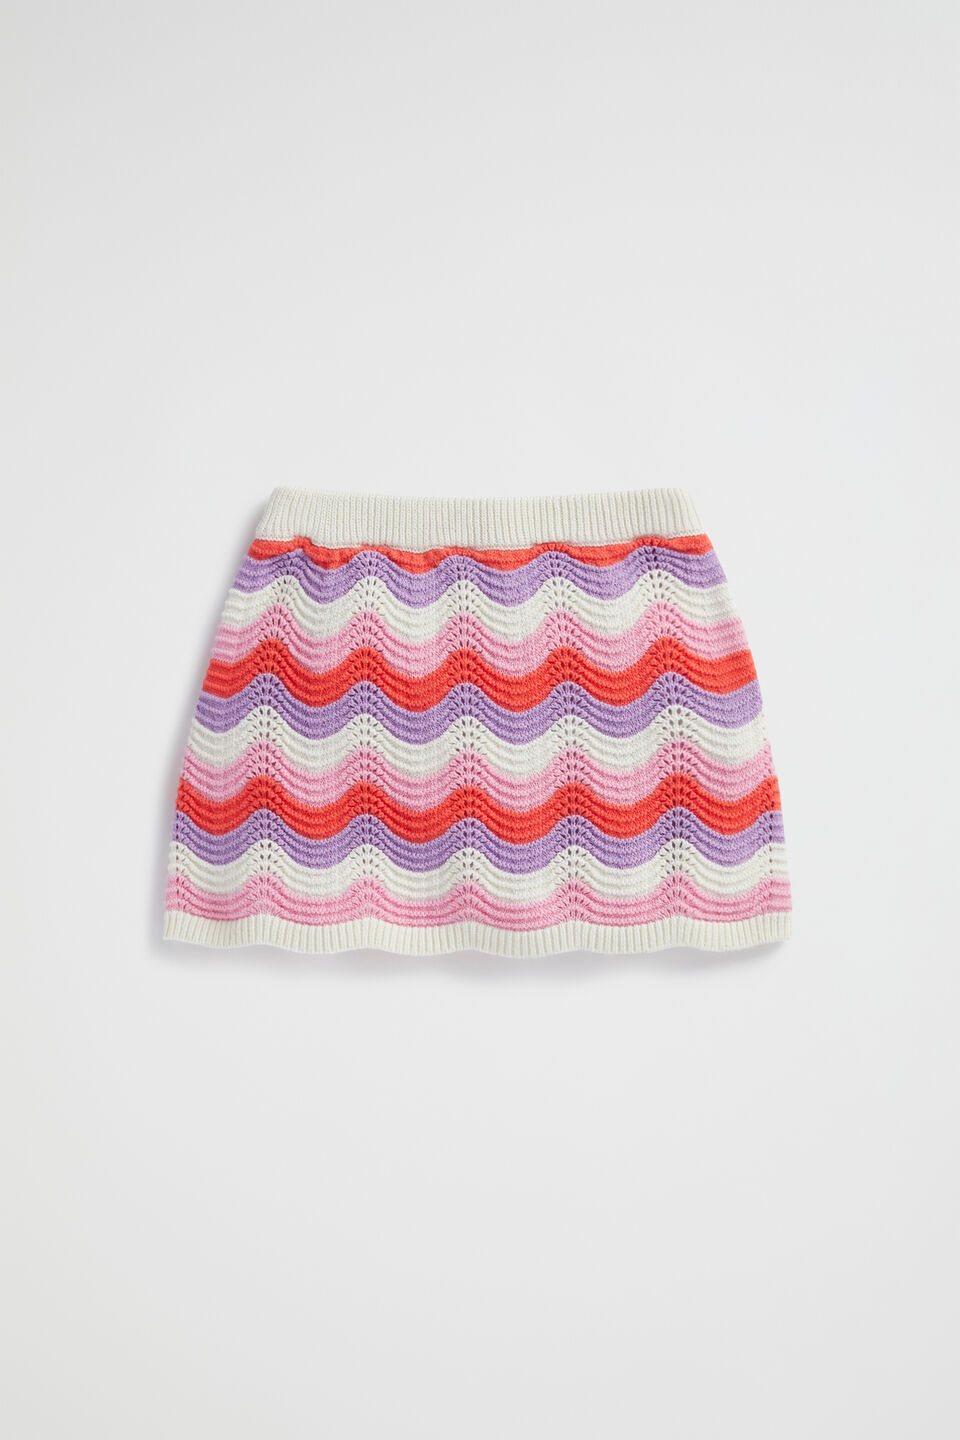 Wavy Crochet Skirt  Multi